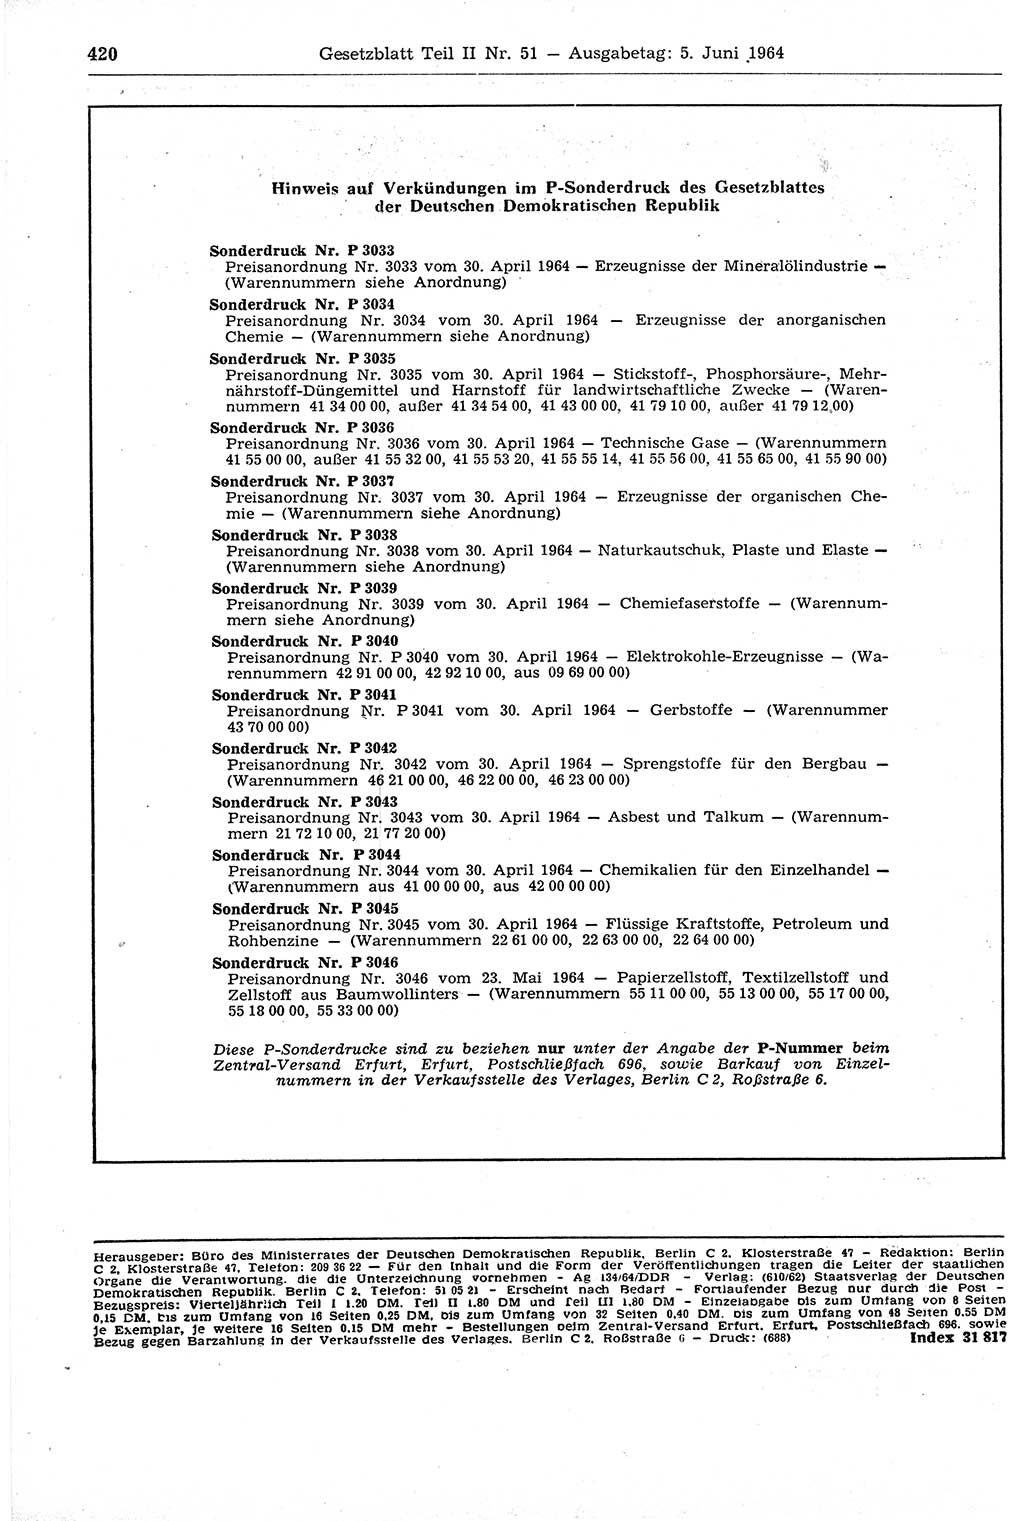 Gesetzblatt (GBl.) der Deutschen Demokratischen Republik (DDR) Teil ⅠⅠ 1964, Seite 420 (GBl. DDR ⅠⅠ 1964, S. 420)